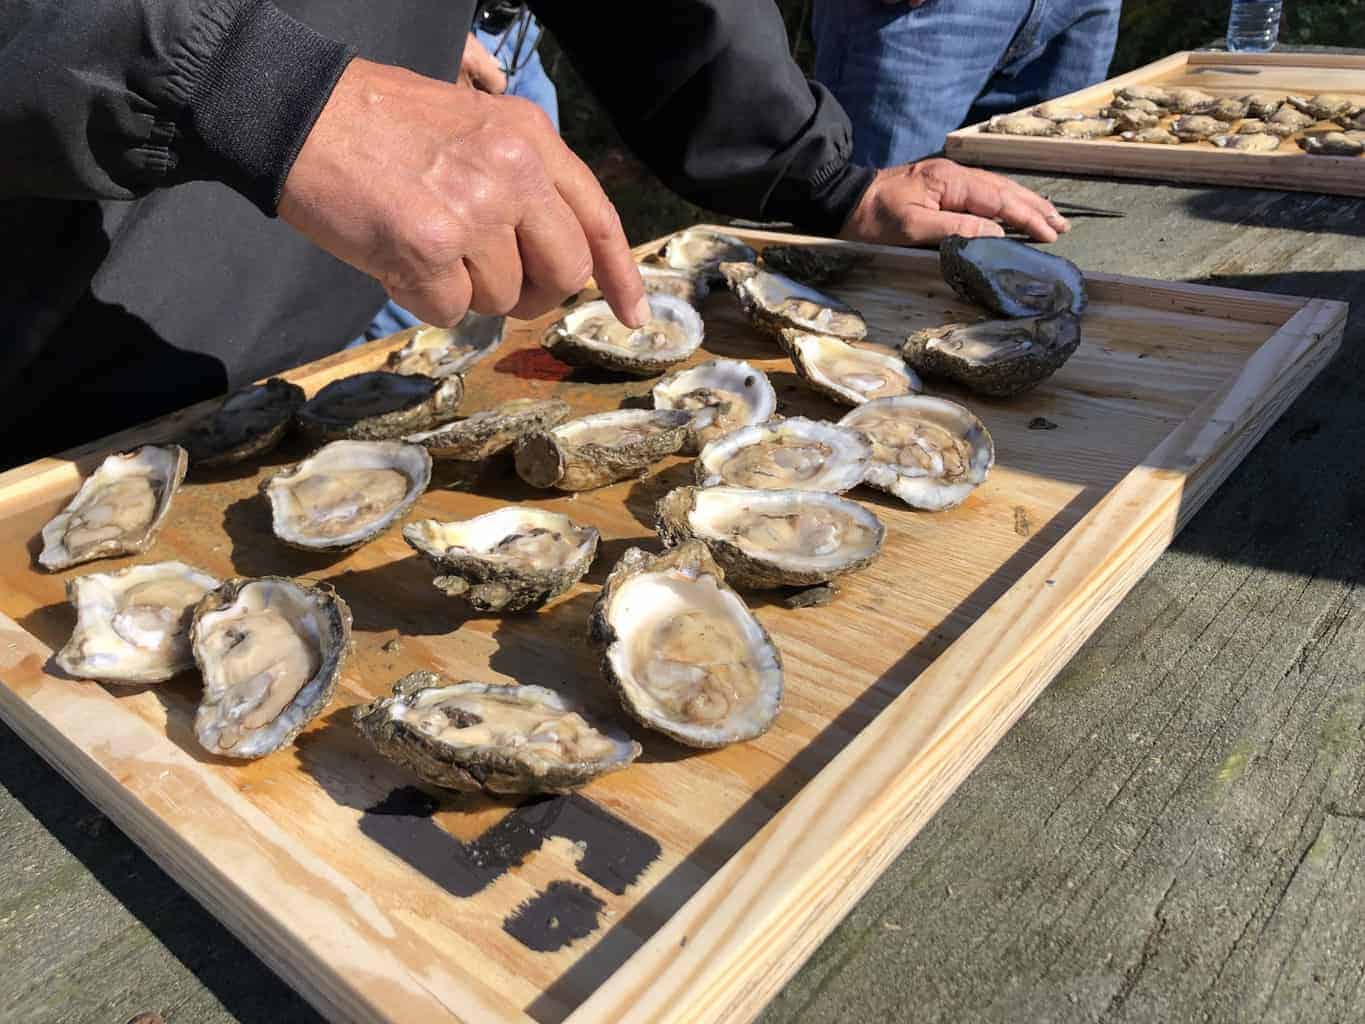 oyster spat festival